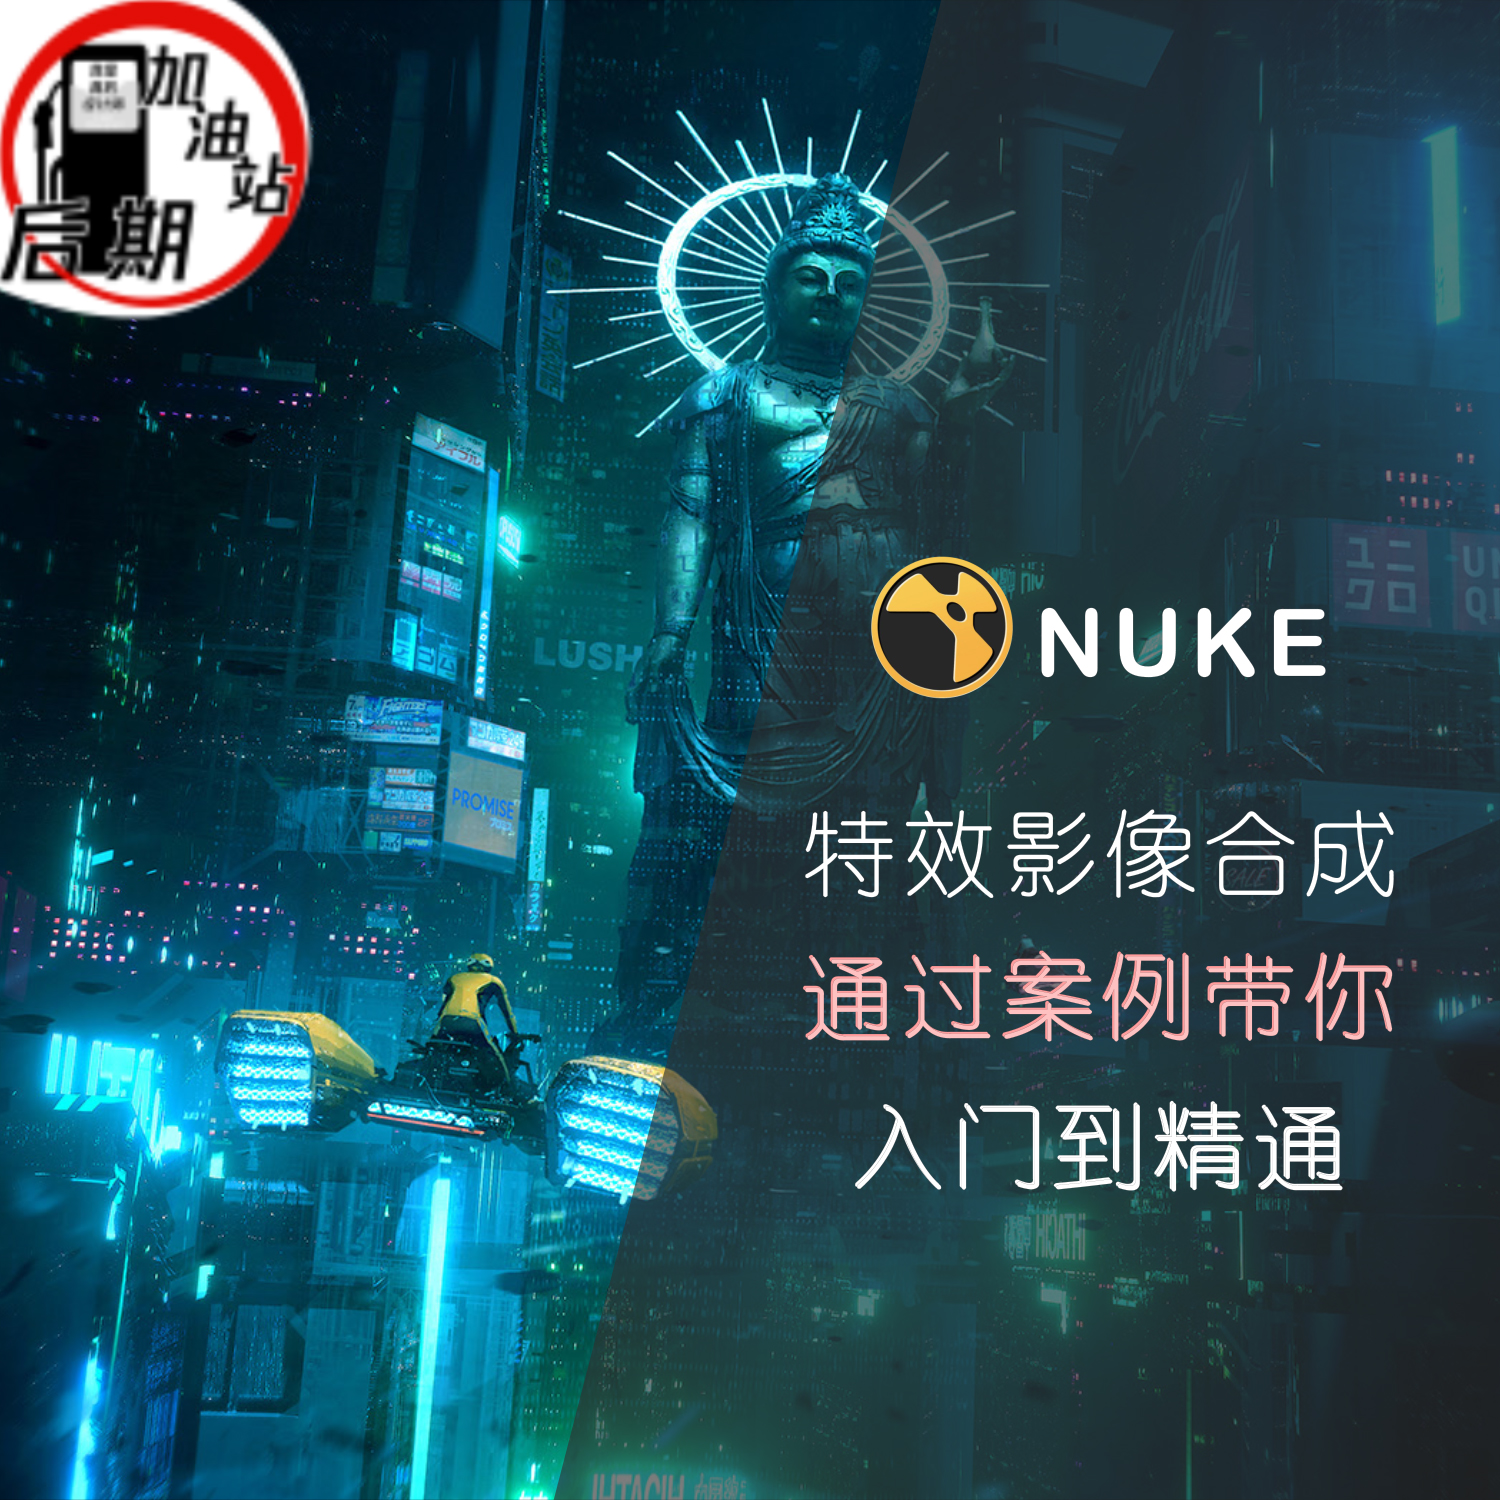 Nuke教程基础系统到案例熟练特效合成教程 带学习素材